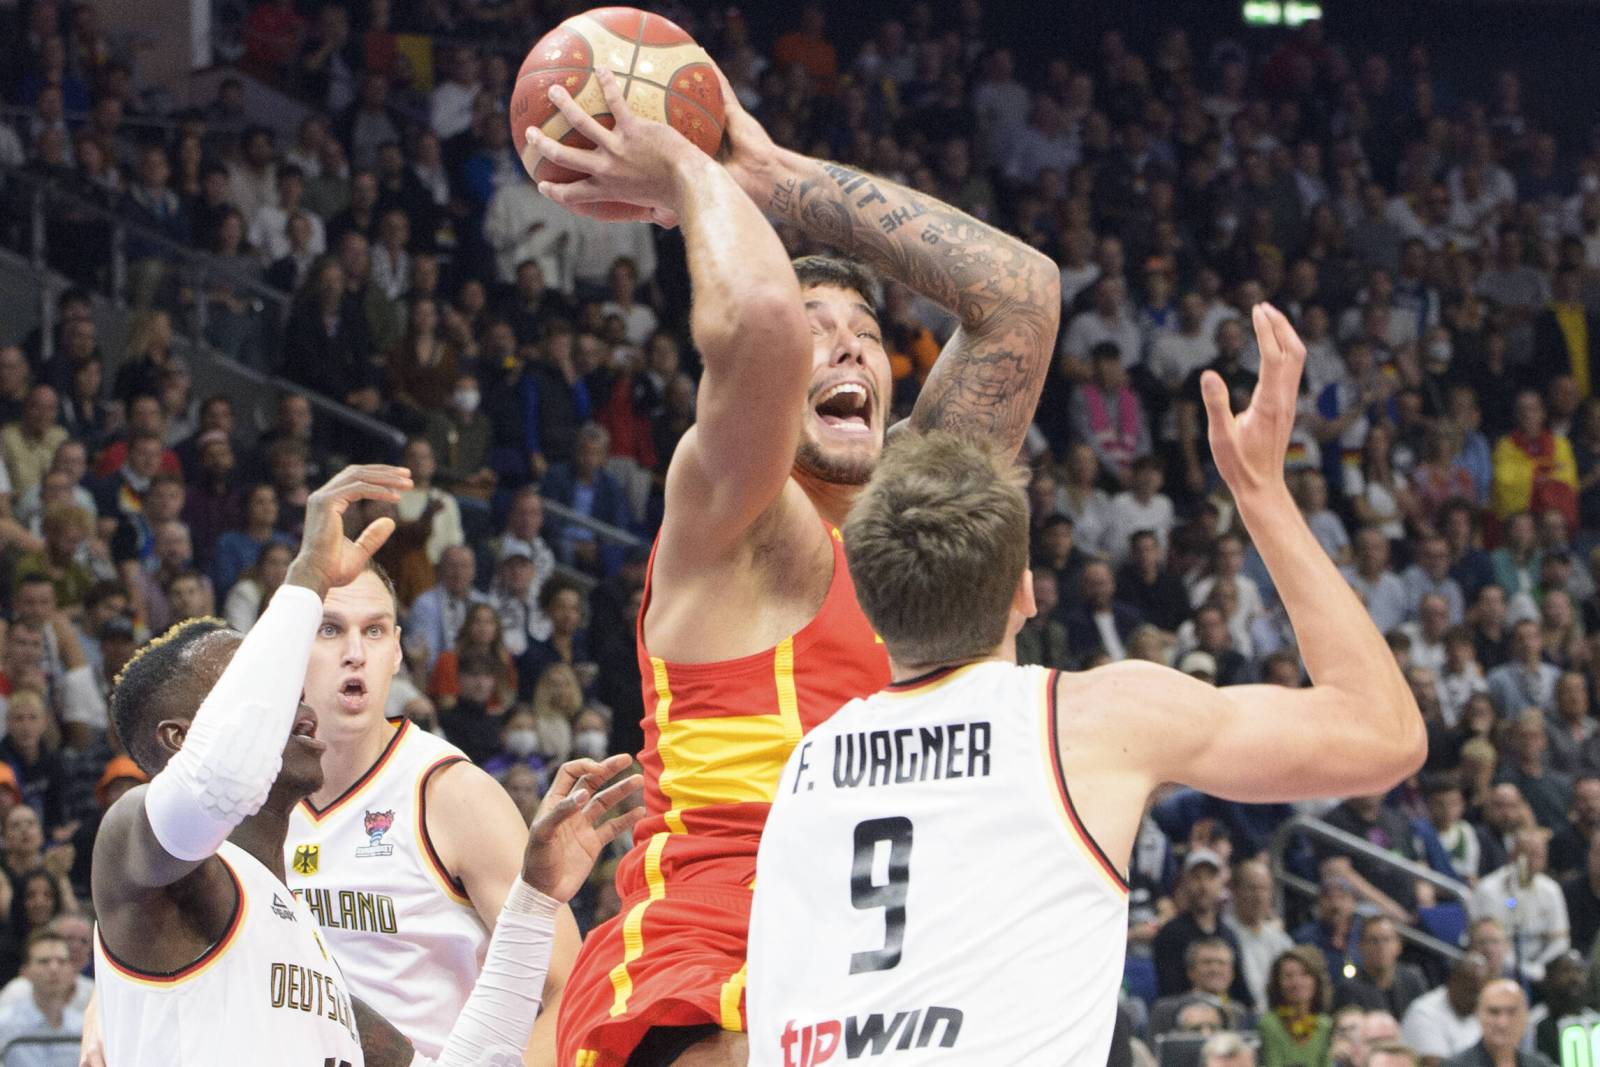 Европа баскетбол мужчины. Сборная Испании по баскетболу. Баскетбольный матч. Германия Евробаскет. Сборная Германии по баскетболу 2022.